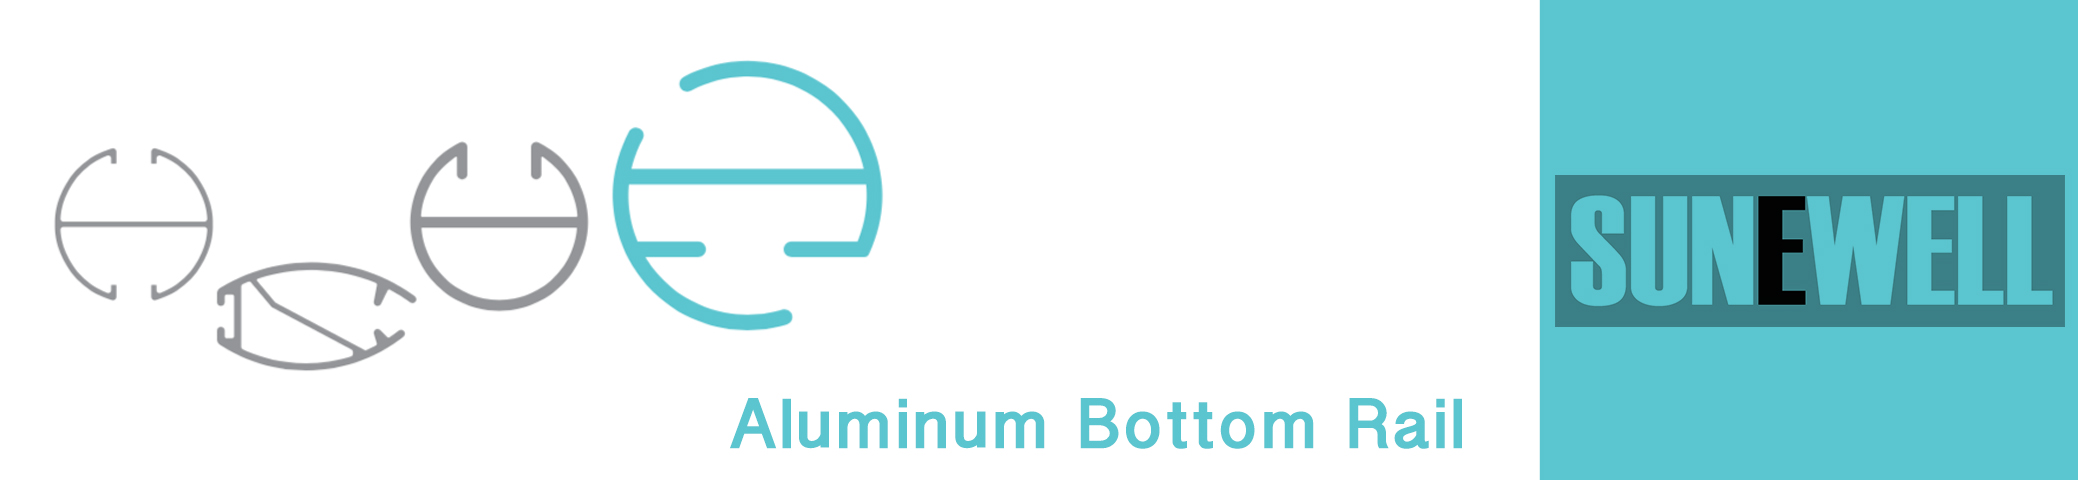 I-Roller Blinds Aluminium Bottom Rail Series